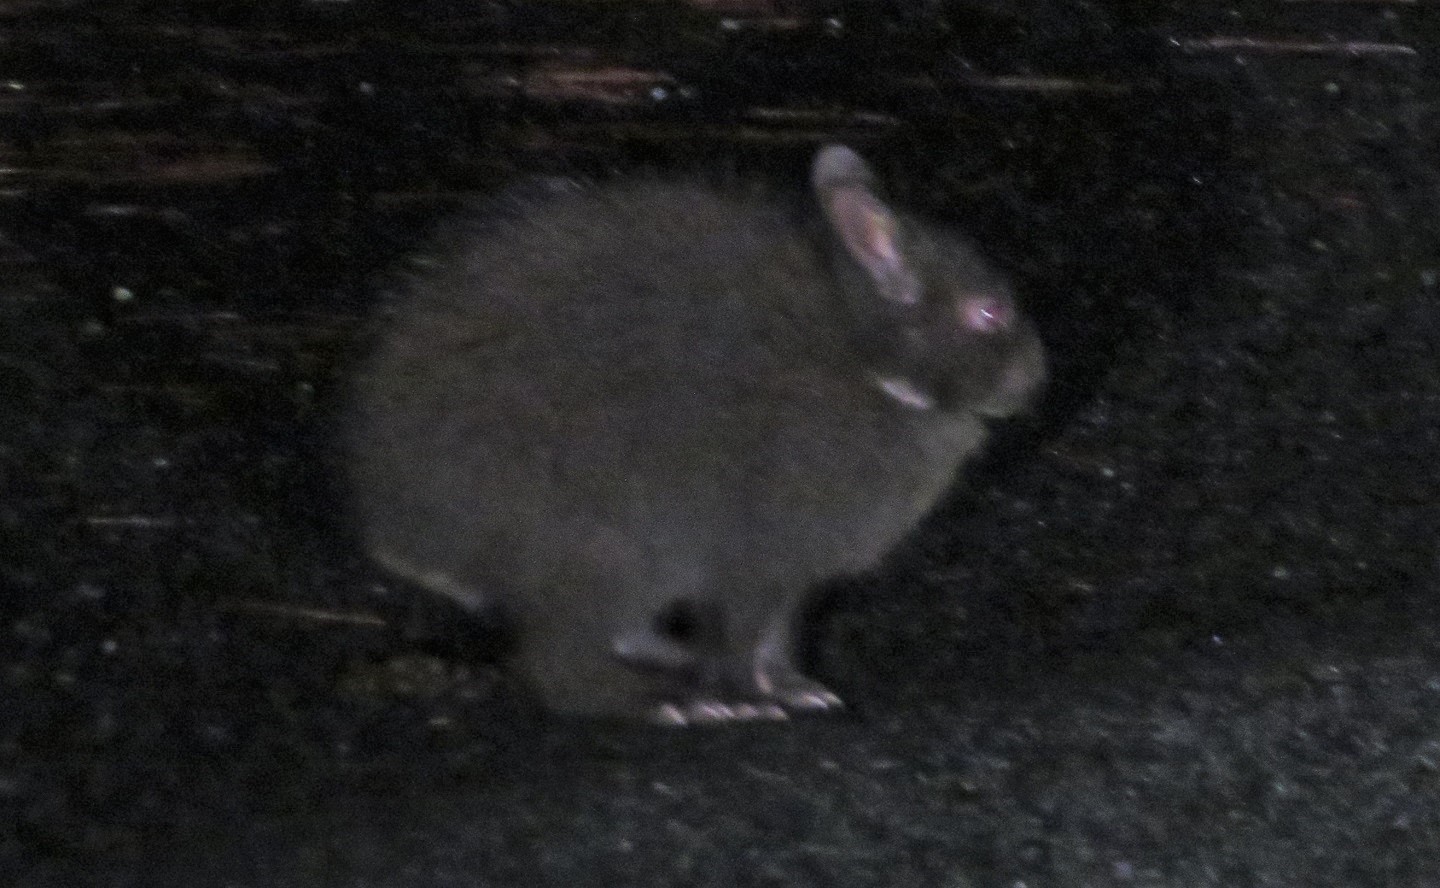 アマミノクロウサギ 奄美の夜の生き物を探す方法 自然遺産 生き物サーチング